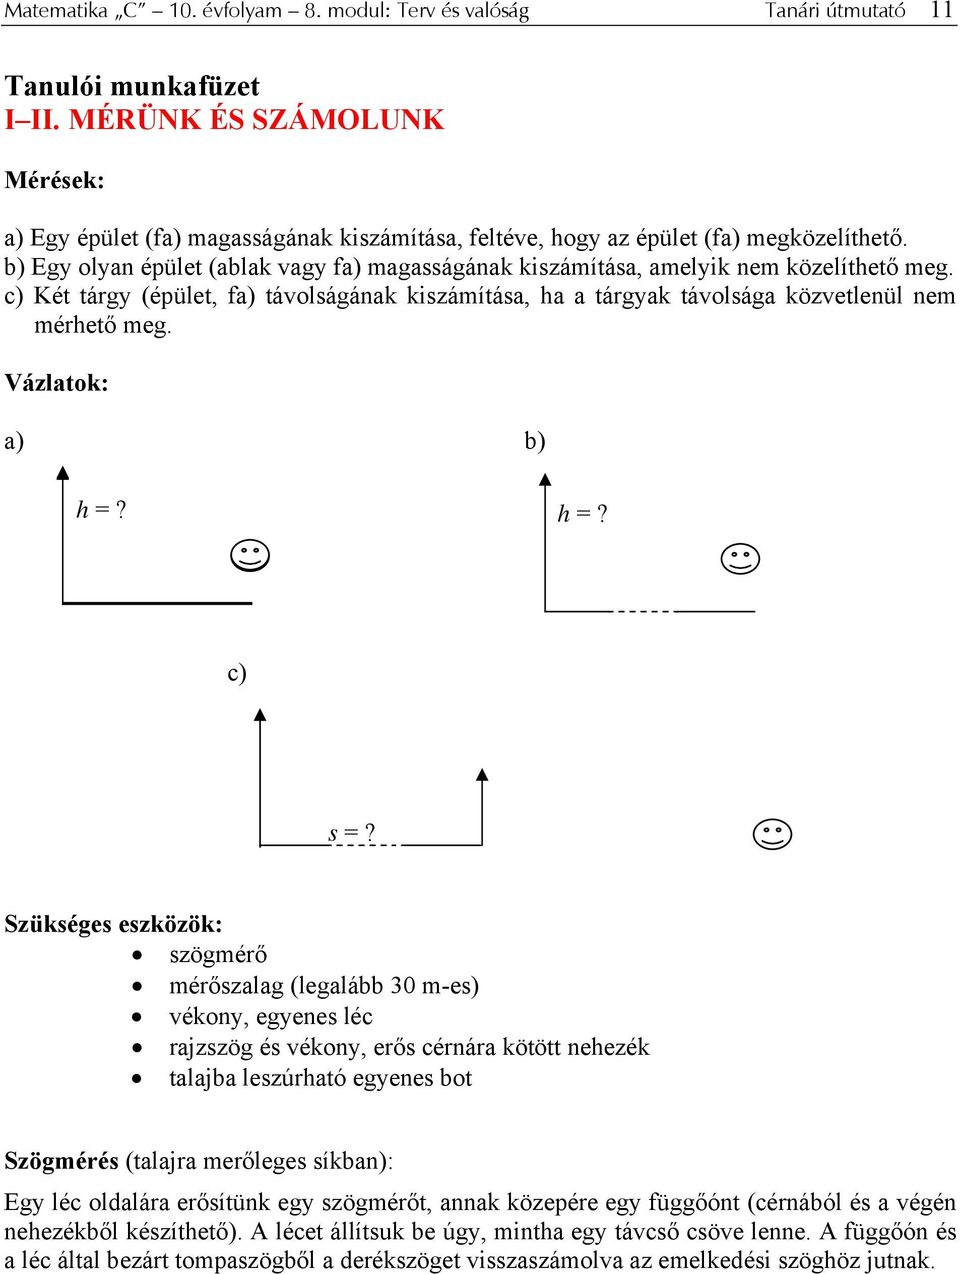 Matematika C 10. osztály 8. modul Terv és valóság - PDF Ingyenes letöltés